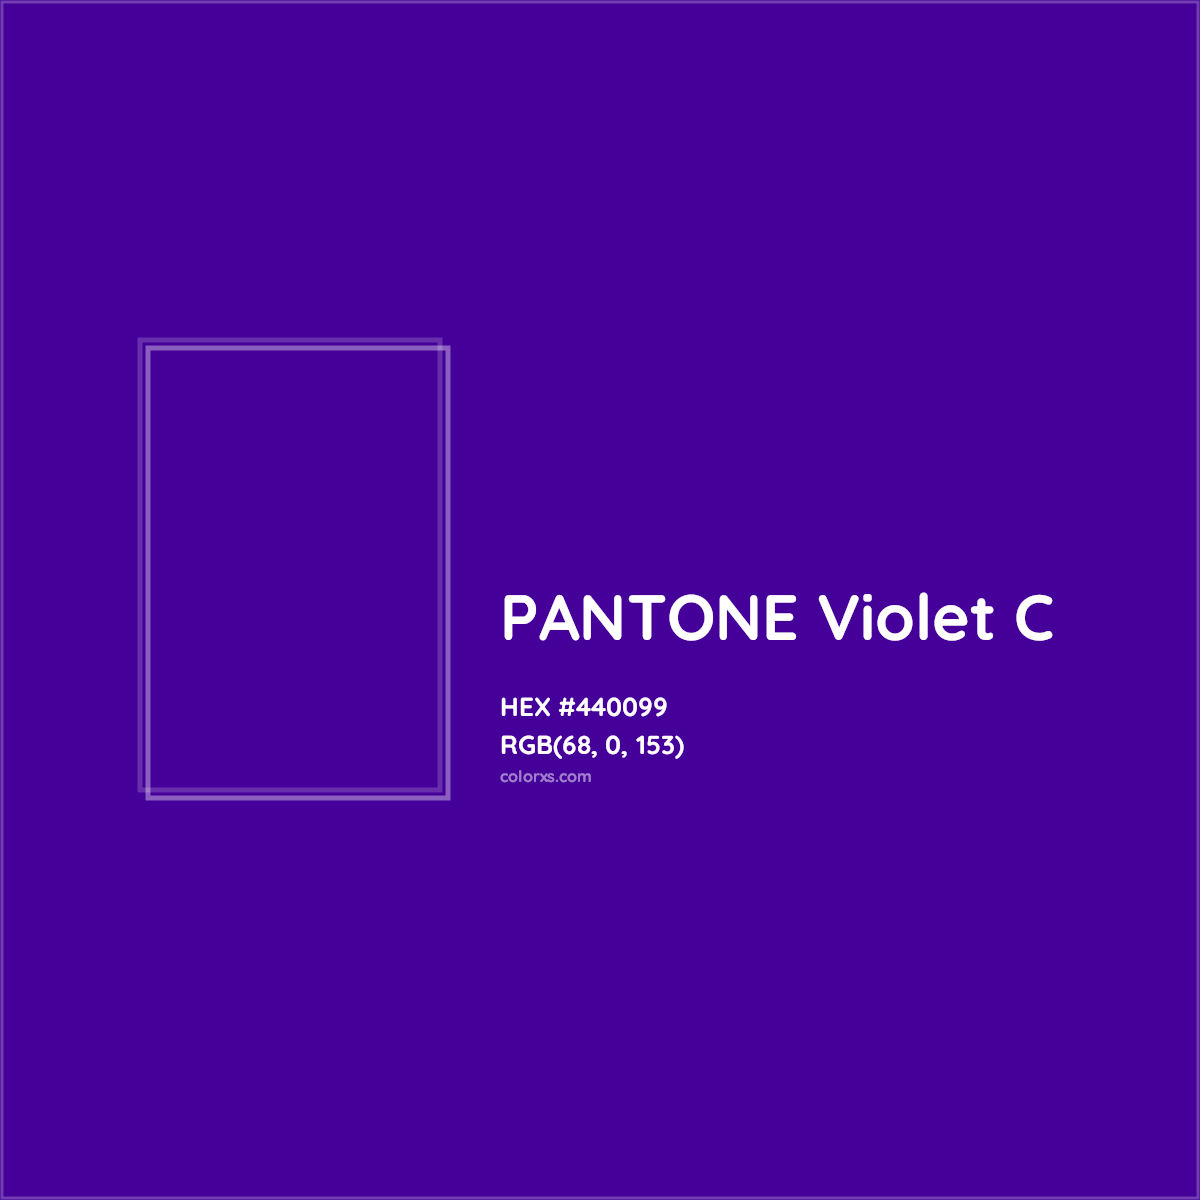 HEX #440099 PANTONE Violet C CMS Pantone PMS - Color Code